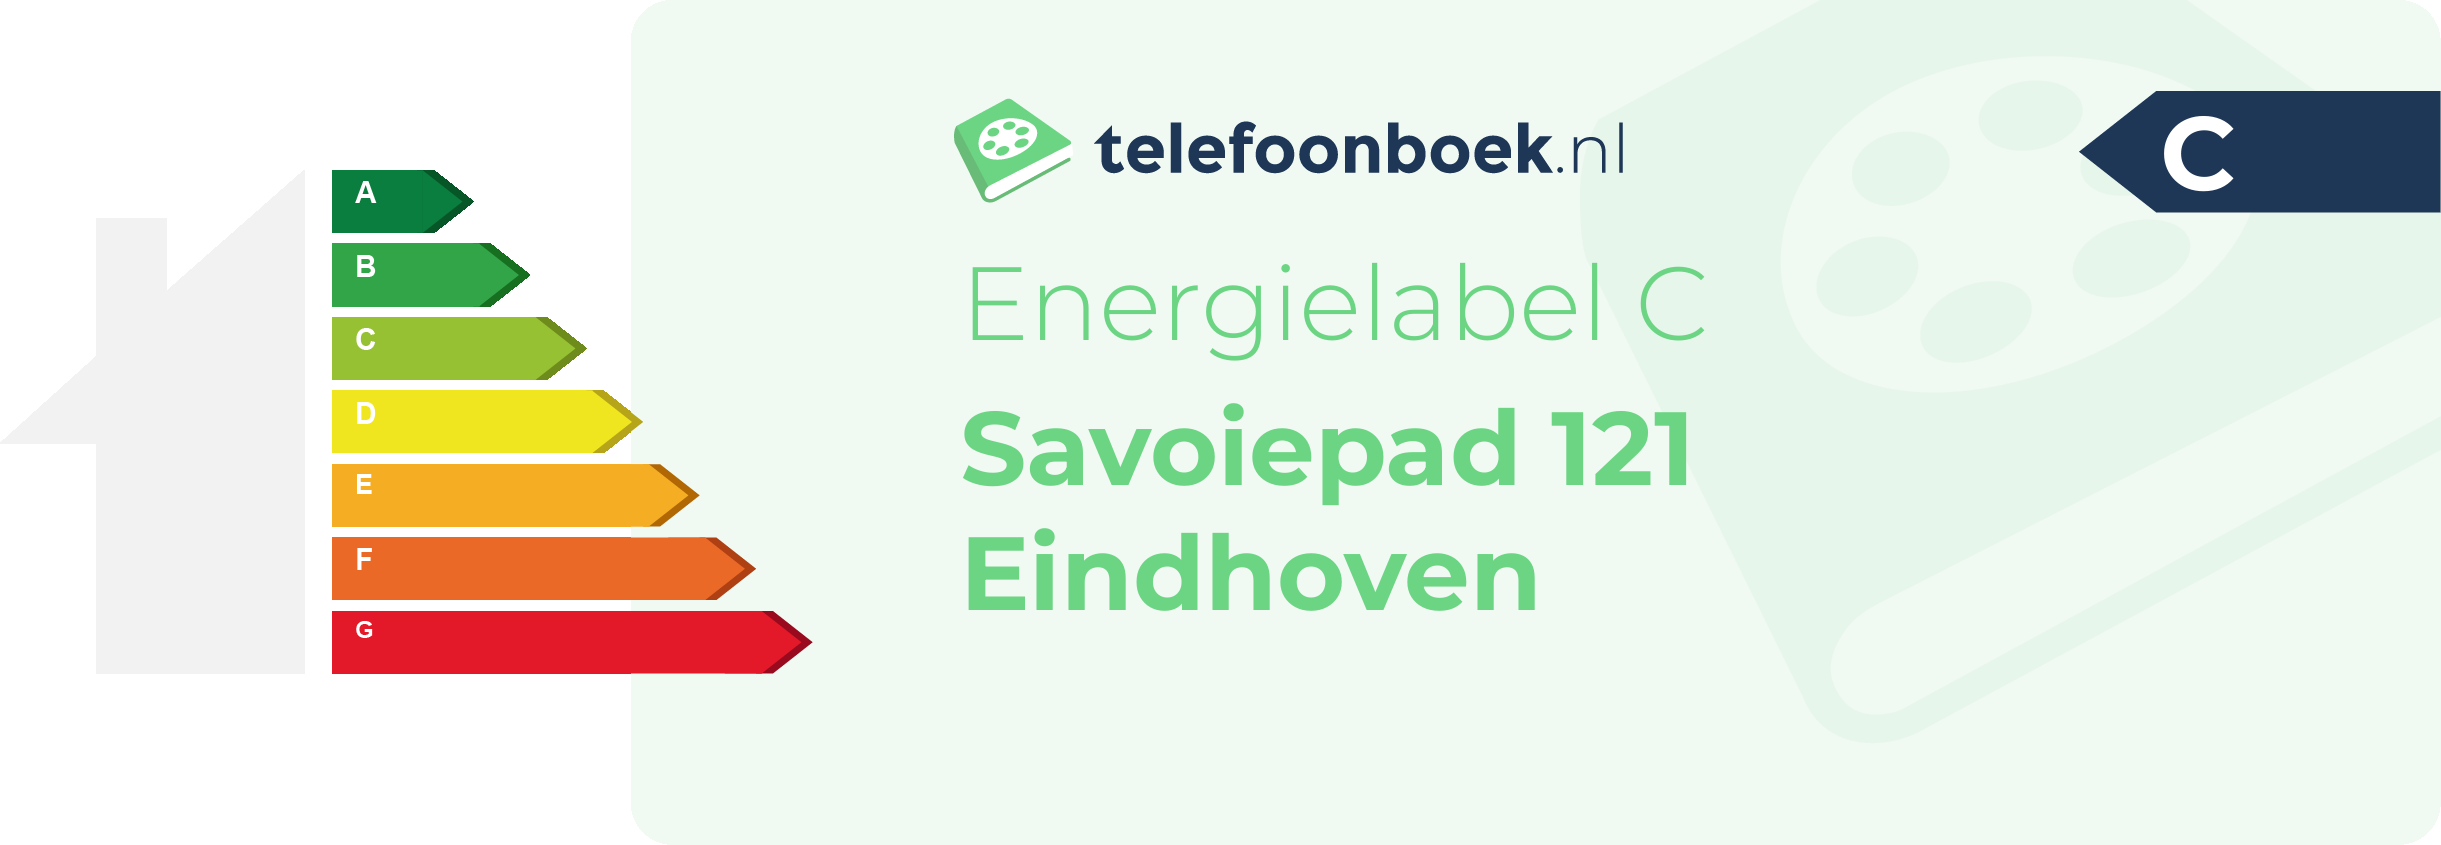 Energielabel Savoiepad 121 Eindhoven